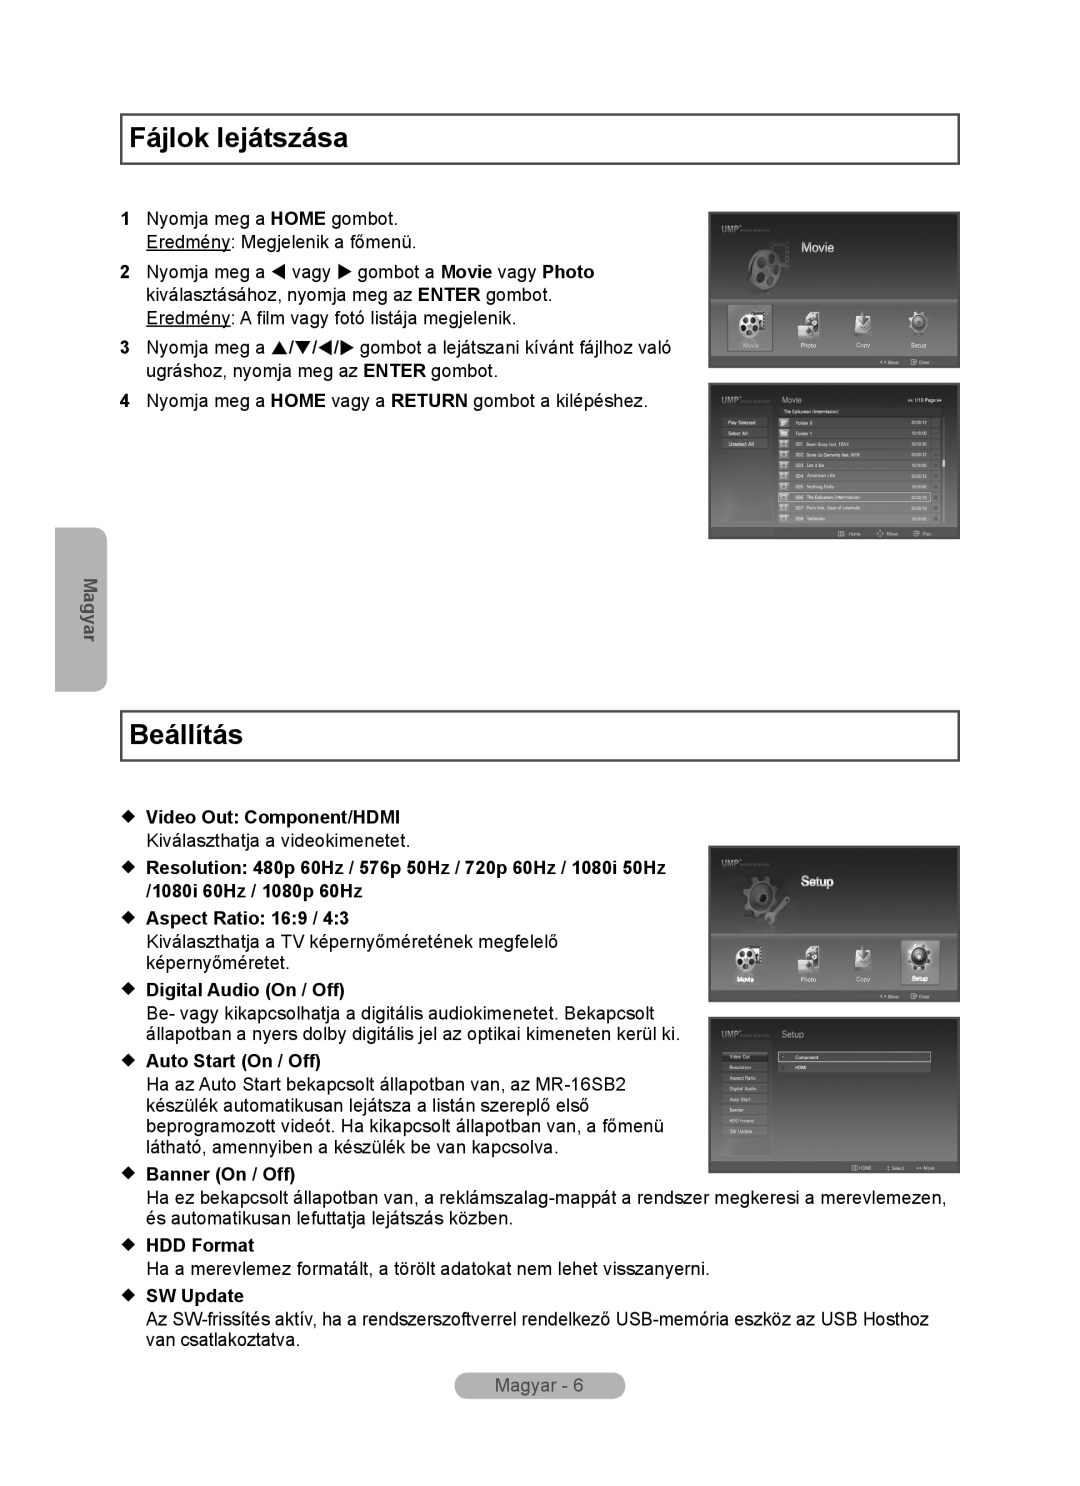 Samsung MR-16SB2 Fájlok lejátszása, Beállítás, Magyar,  Video Out Component/HDMI,  Aspect Ratio 169,  Banner On / Off 